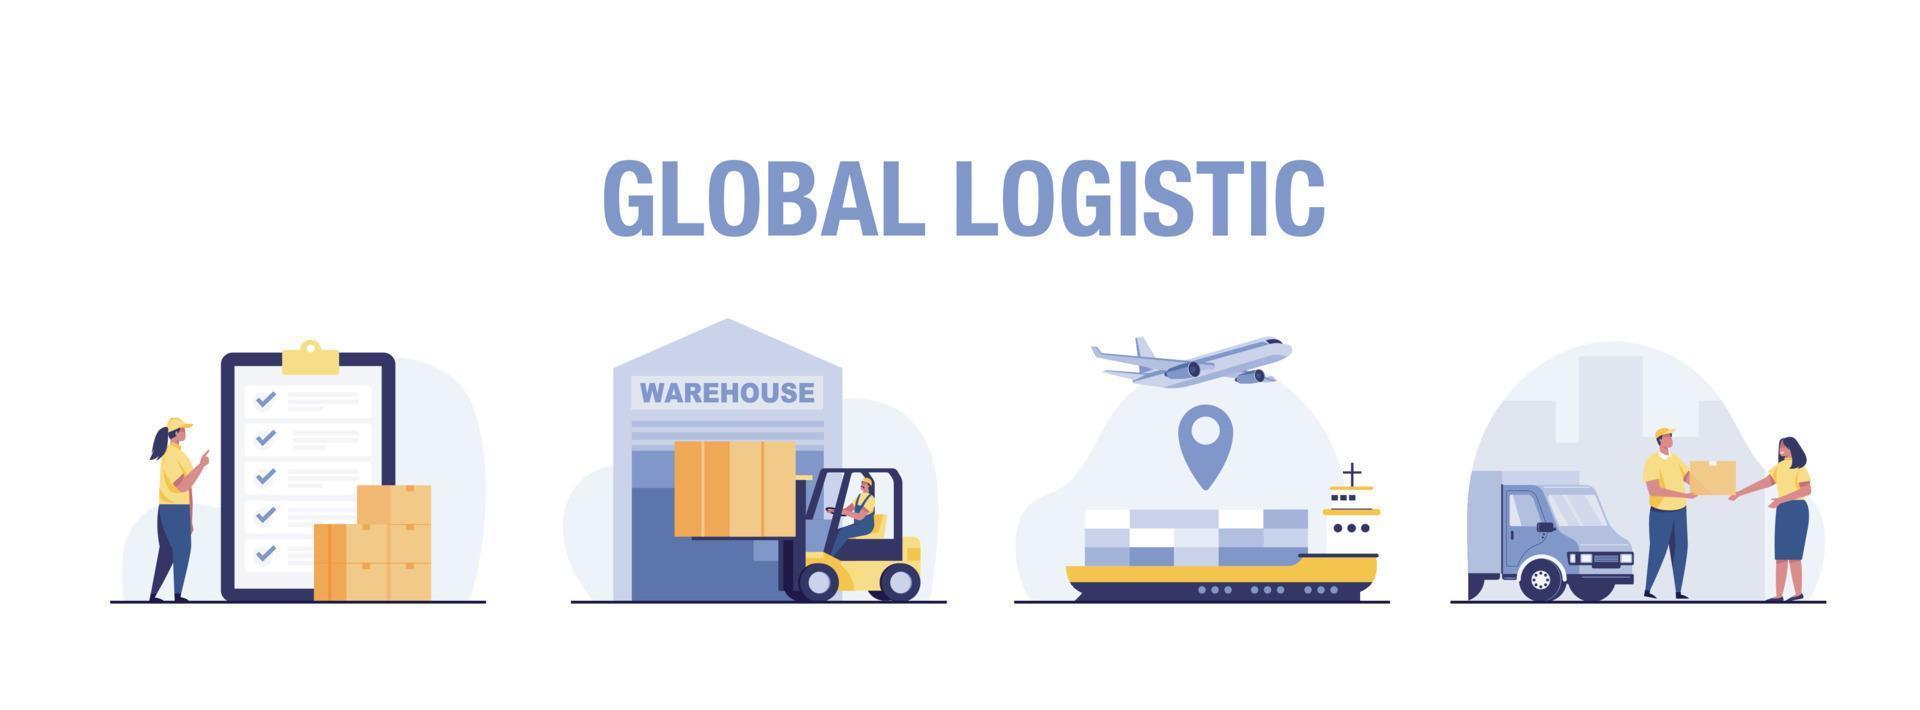 concetto logistico globale. cliente che sceglie il tipo di consegna dell'ordine, distribuzione globale. vettore